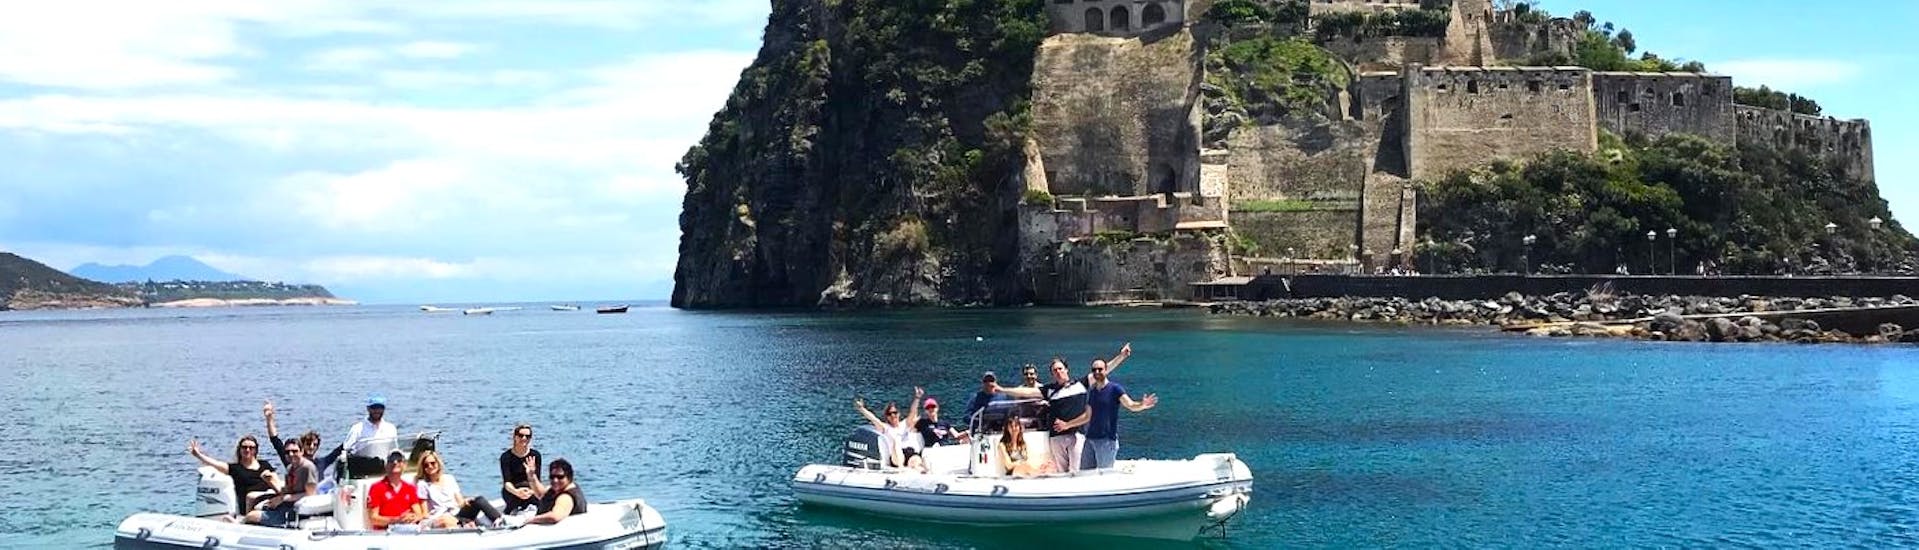 Blick auf das Castello Aragonese, das Ihr während der von Seaside Napoli organisierten RIB Bootstour nach Ischia und Procida mit Aperitif und Schnorcheln sehen könnt.